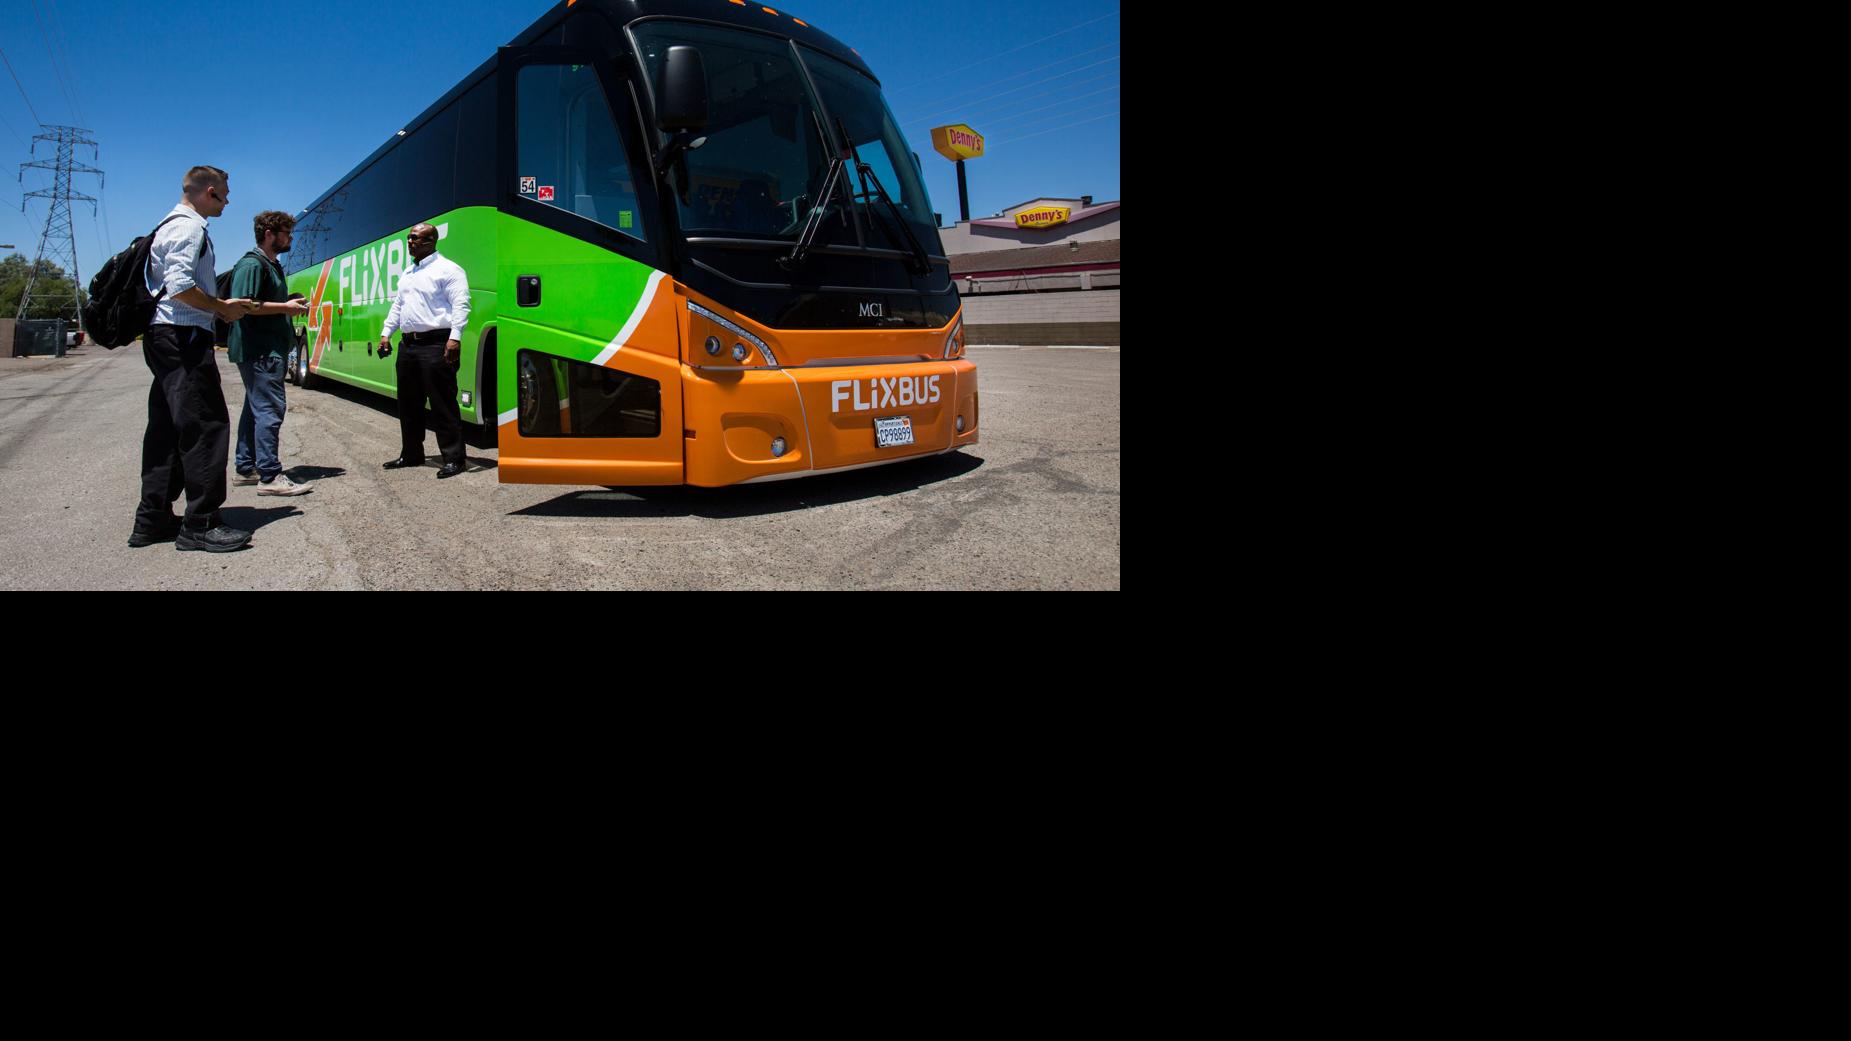 Flixbus service in Tucson tucson com